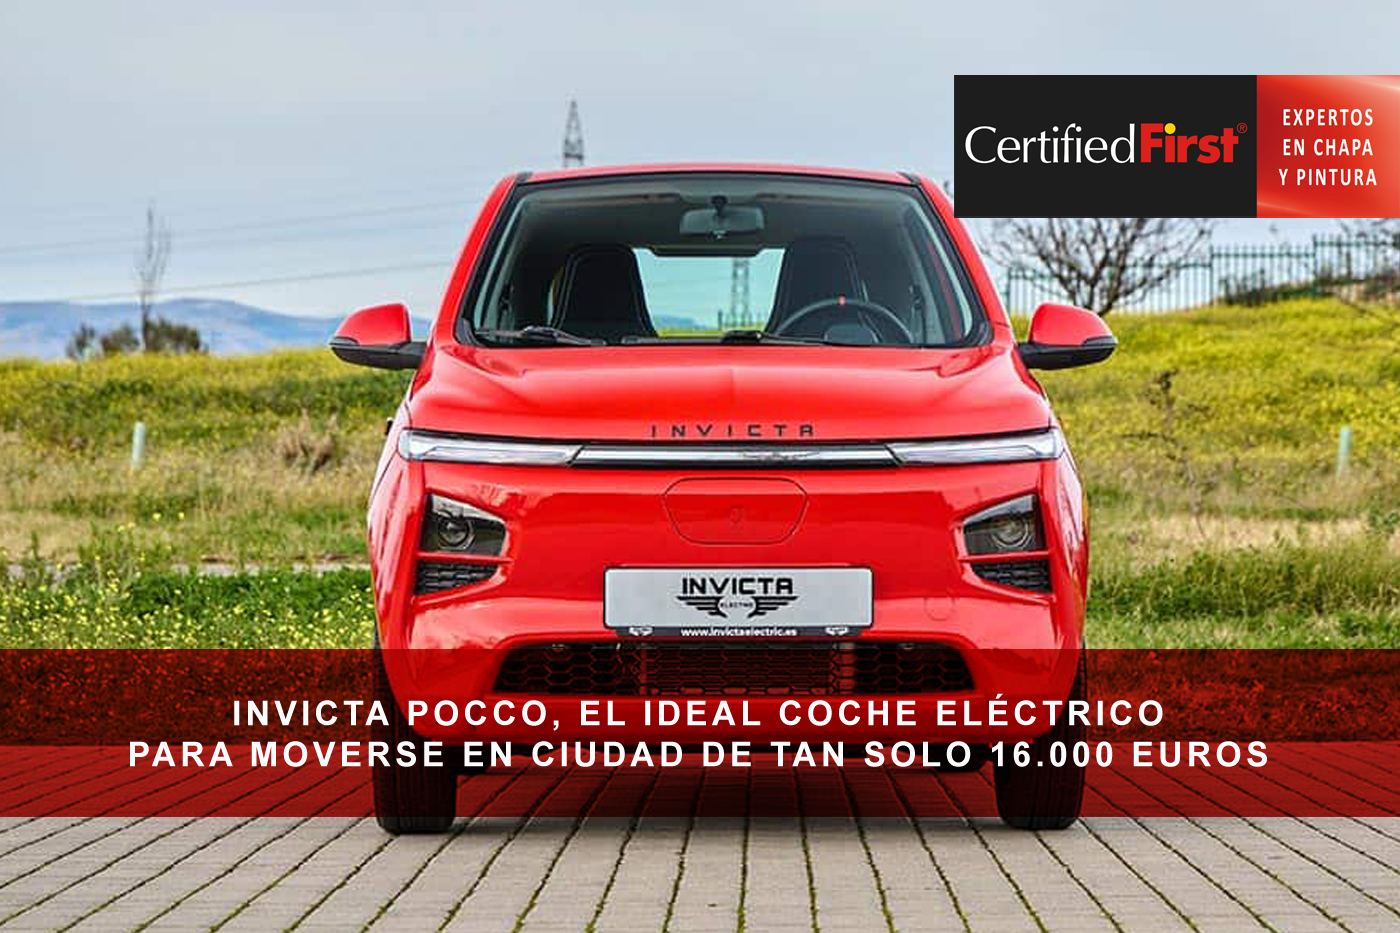 Invicta Pocco, el ideal coche eléctrico para moverse en ciudad de tan solo 16.000 euros